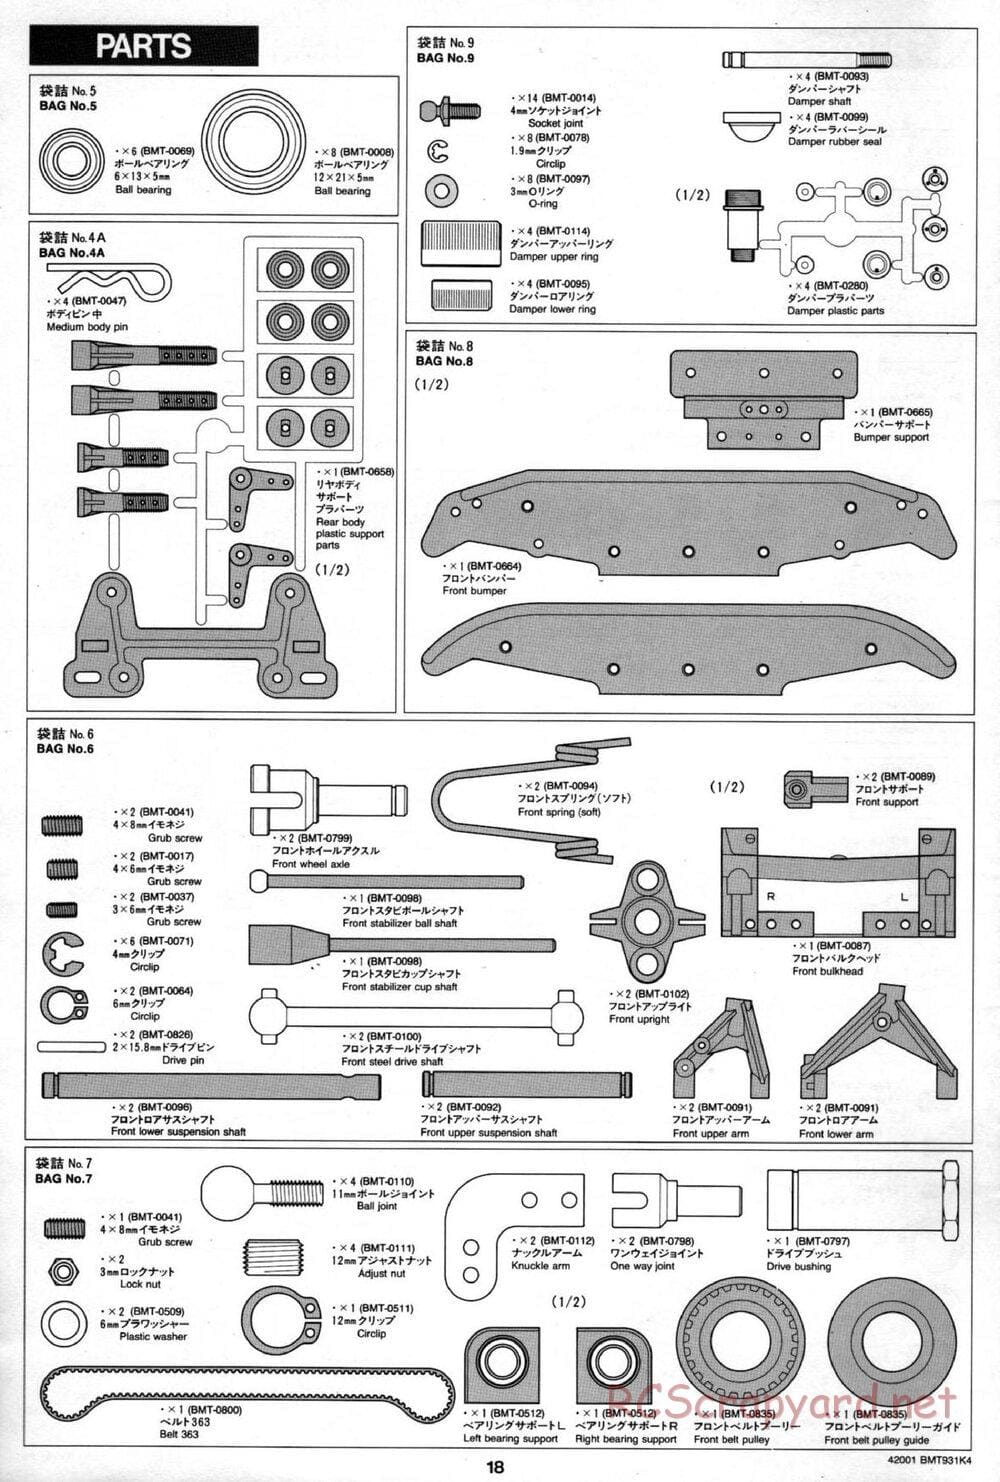 Tamiya - BMT 931 K4 Racing Chassis - Manual - Page 17